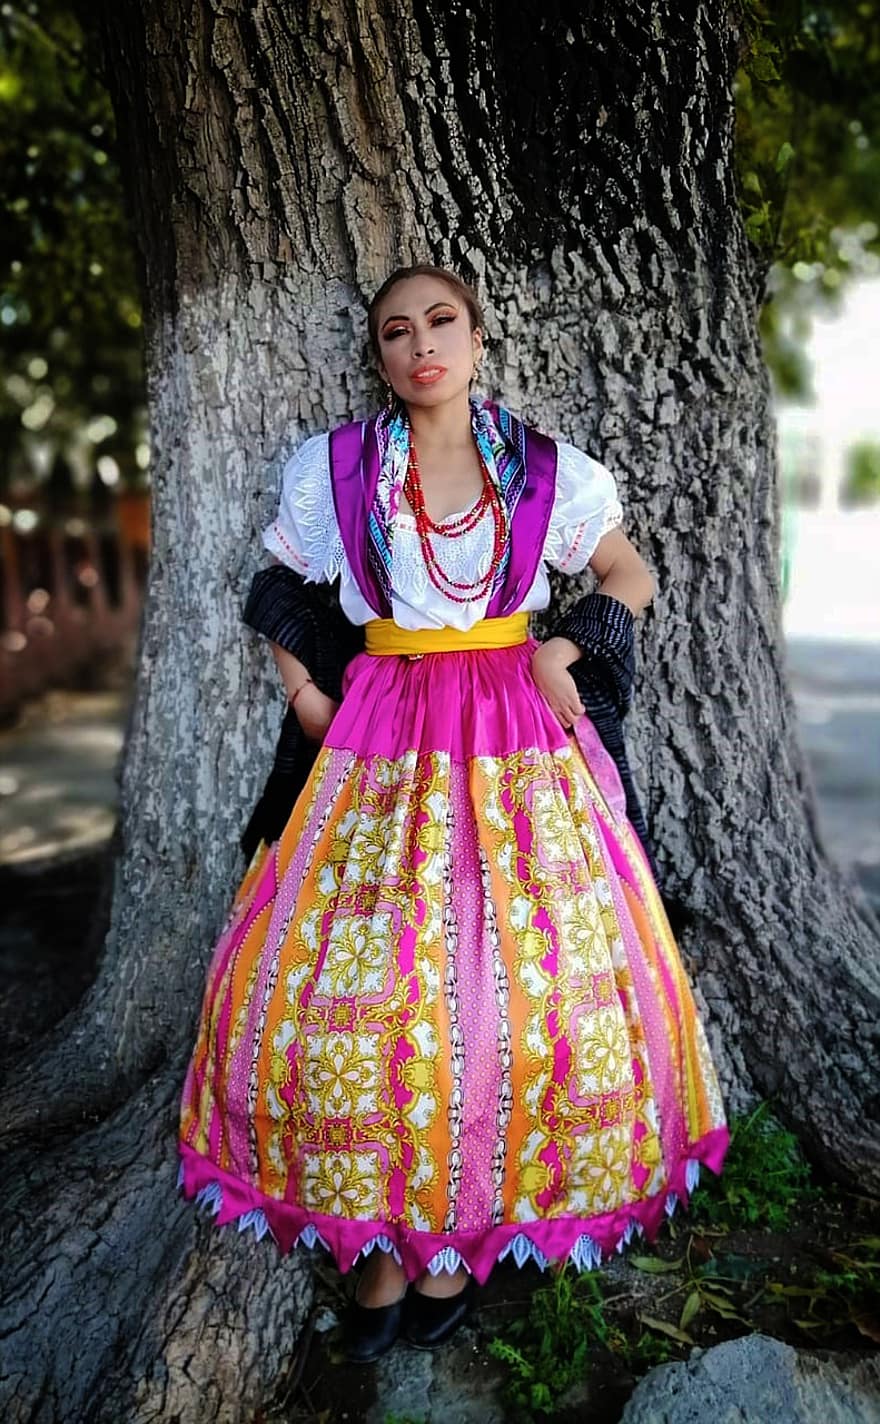 γυναίκα, χορεύτρια, λαογραφία, χορός, παραδοσιακός, παράδοση, ενδυμασία, φόρεμα